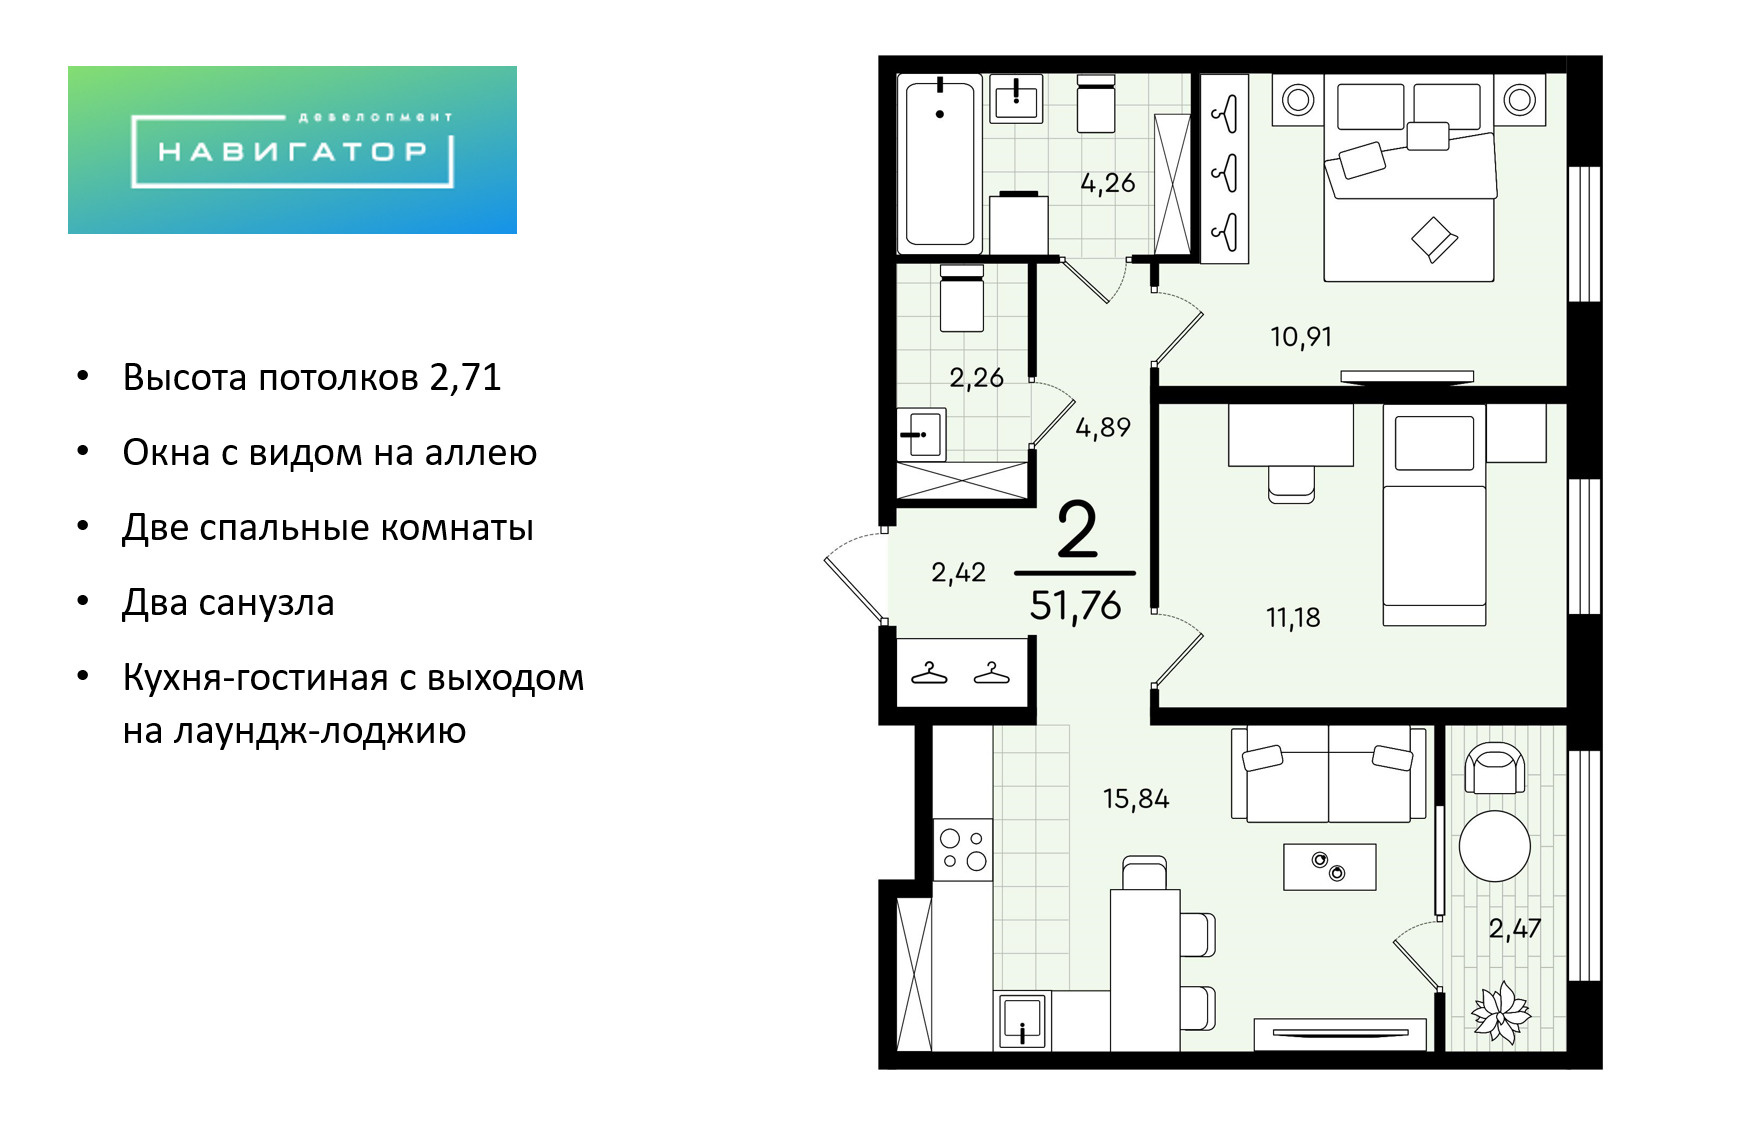 Двухкомнатная квартира дает возможность трансформировать квартиру под собственные нужды: обустроить дополнительную спальню, кабинет, детскую или отдельную гостиную. Стоимость — 5,25 миллиона рублей